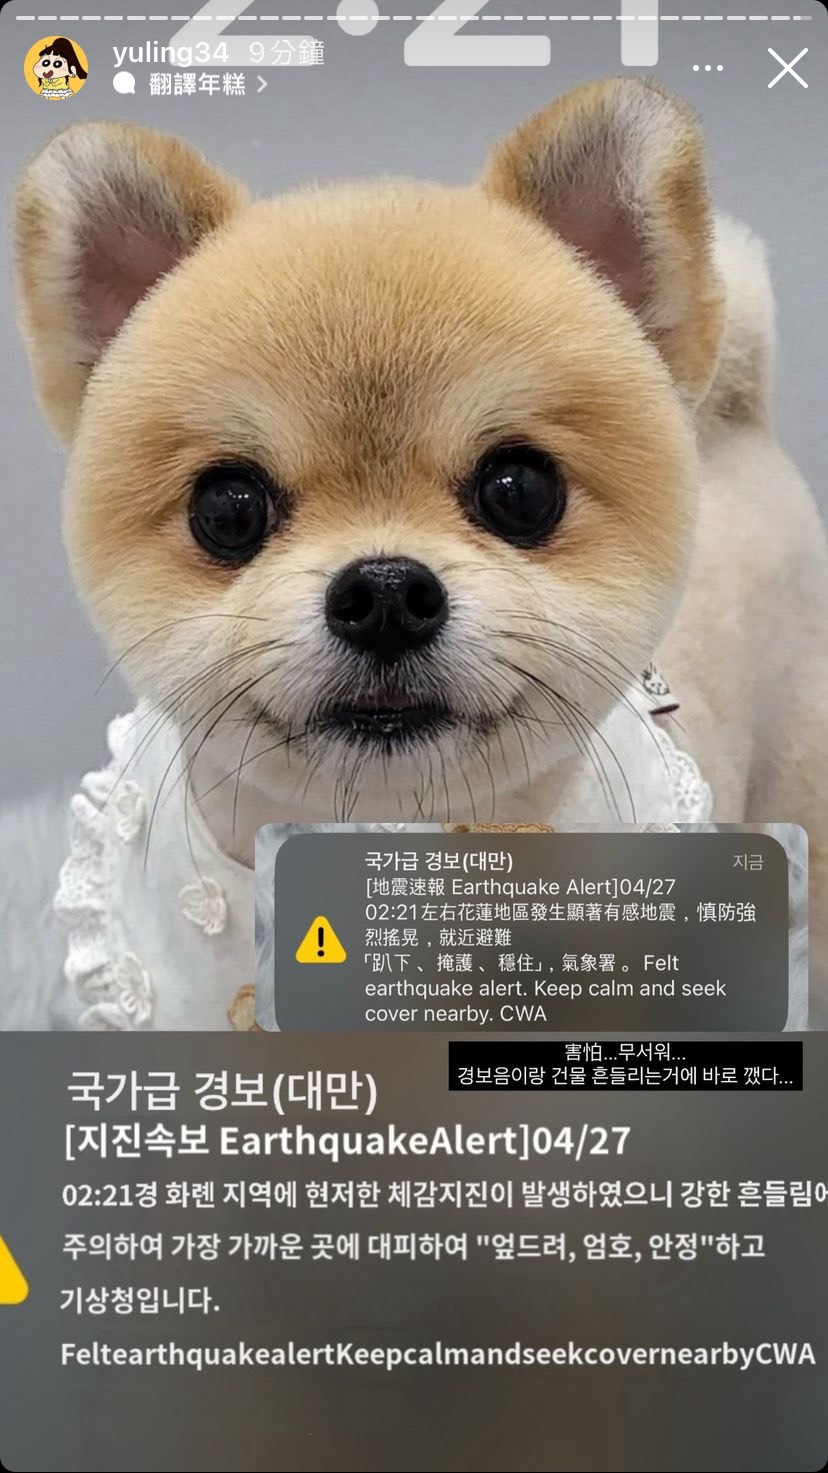 [分享] 韓文版警報